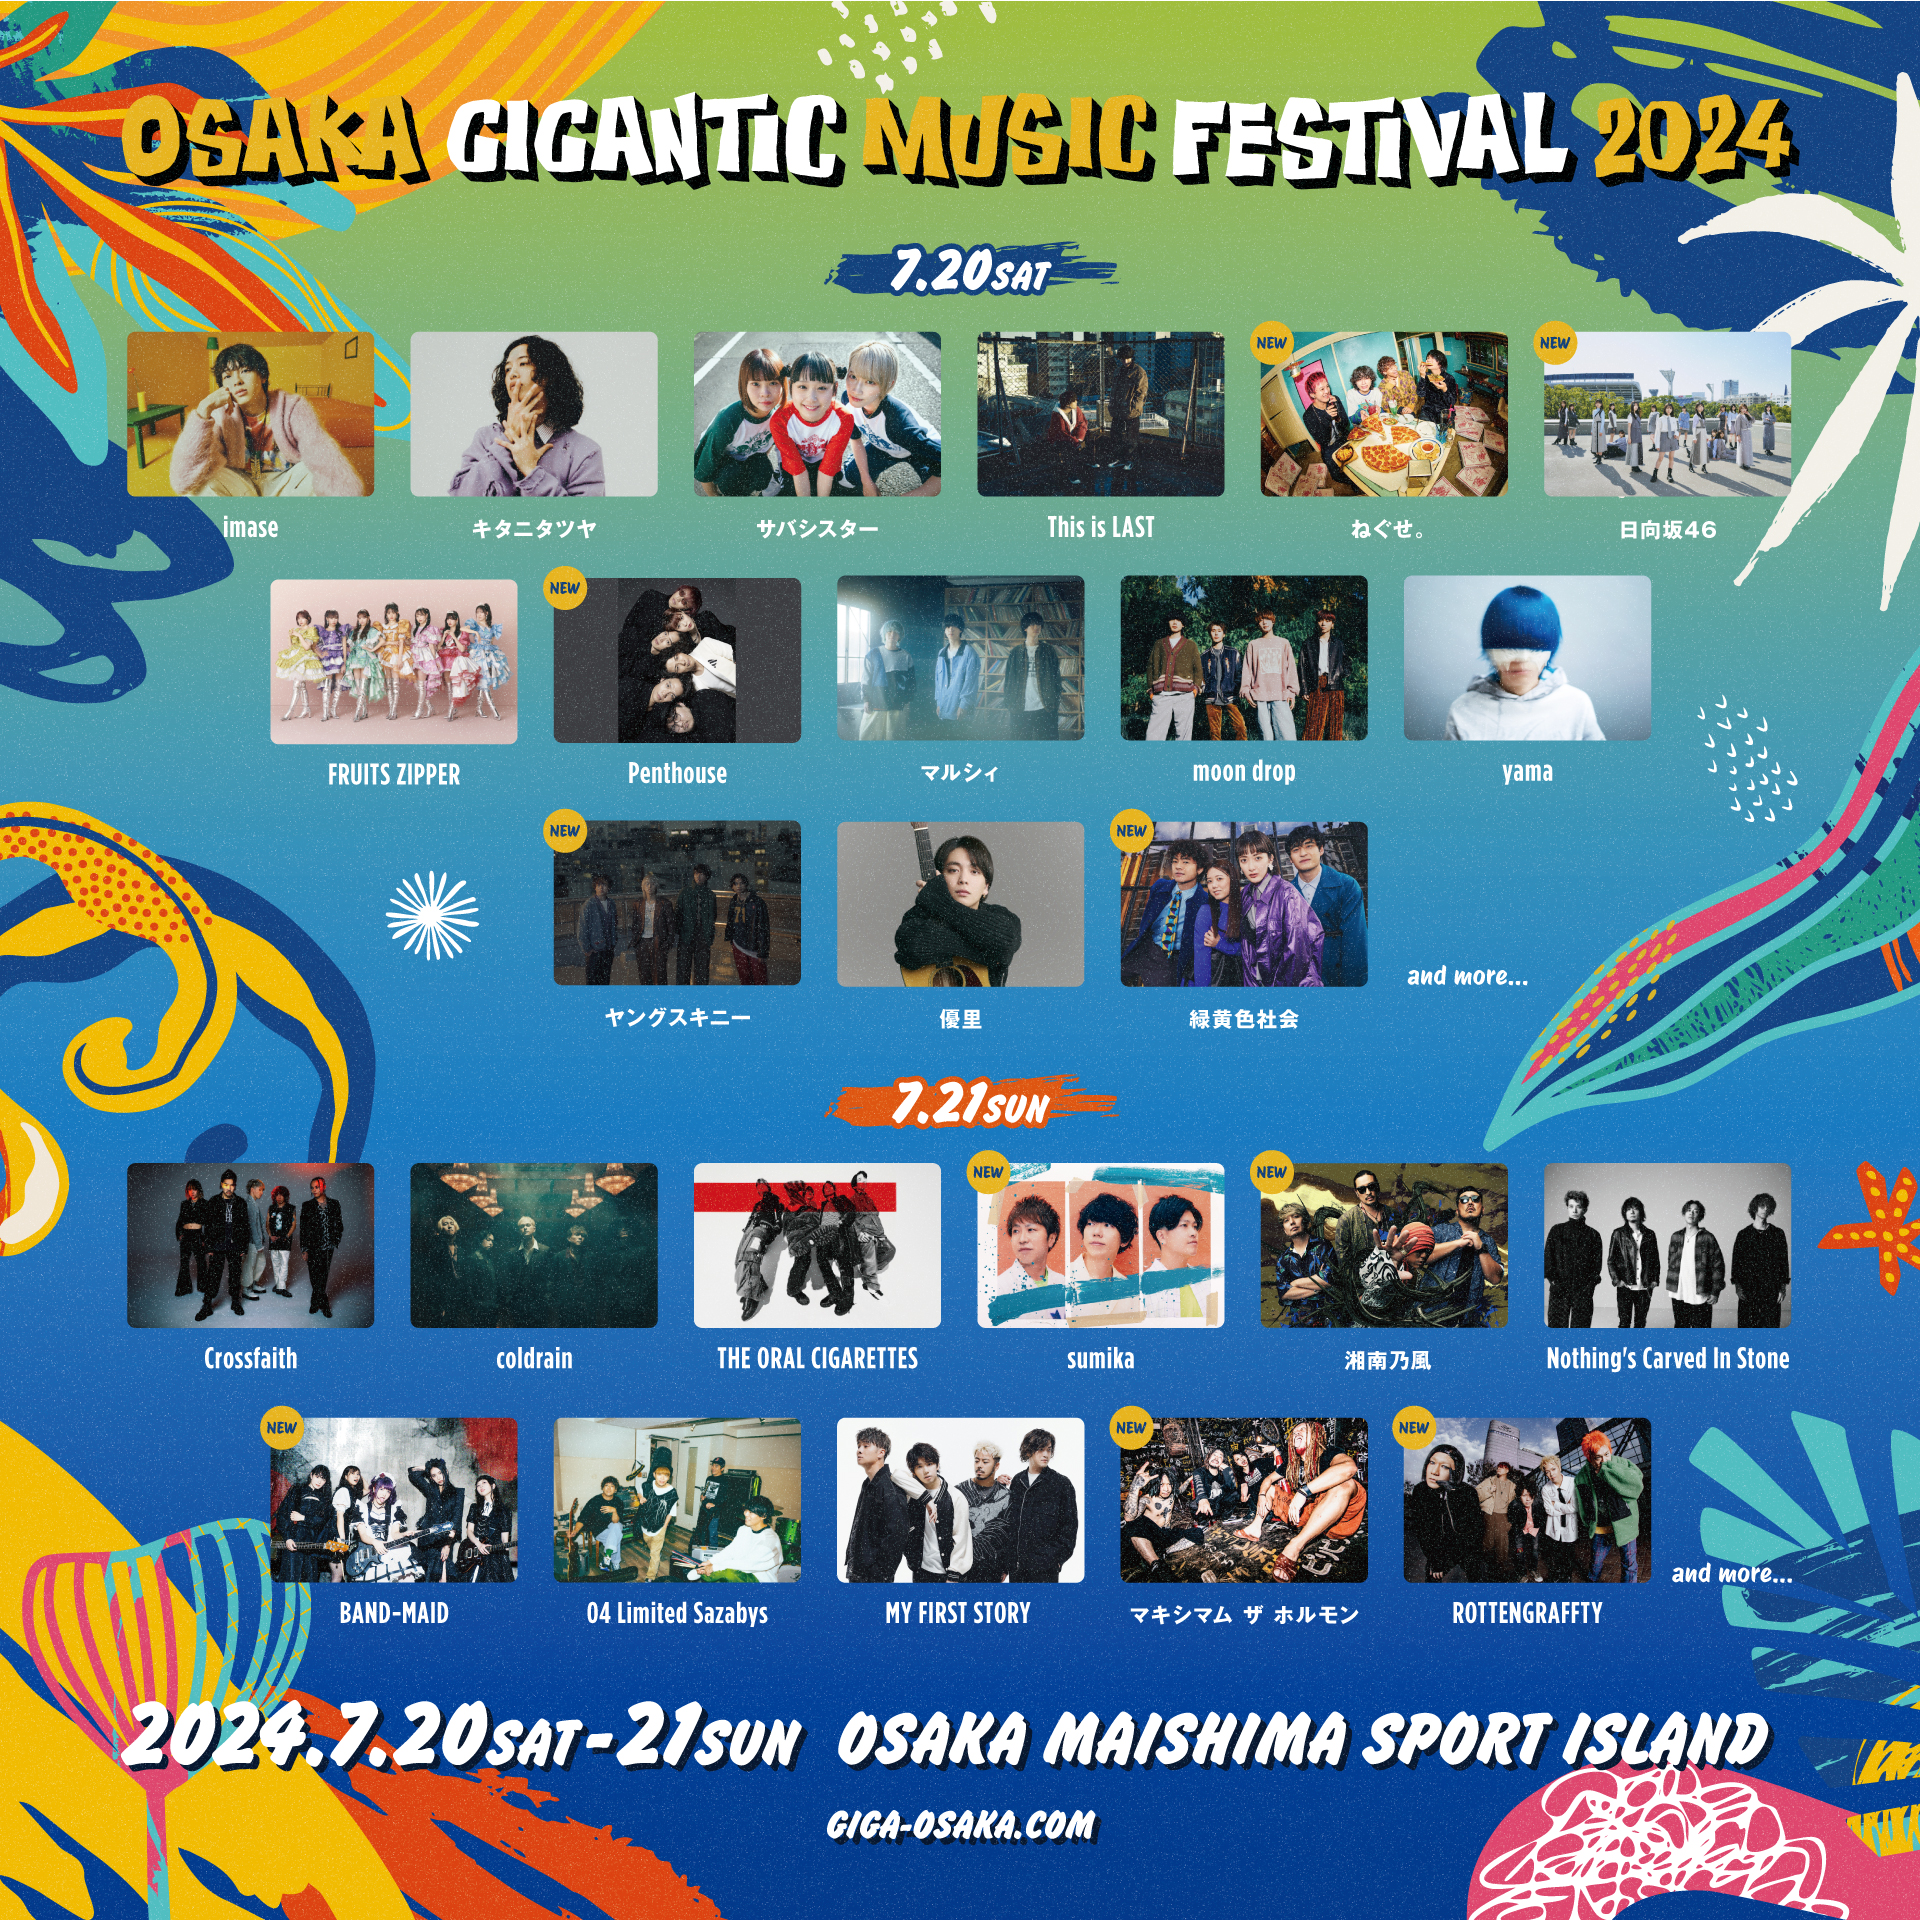 【大阪】OSAKA GIGANTIC MUSIC FESTIVAL 2024 (舞洲スポーツアイランド)